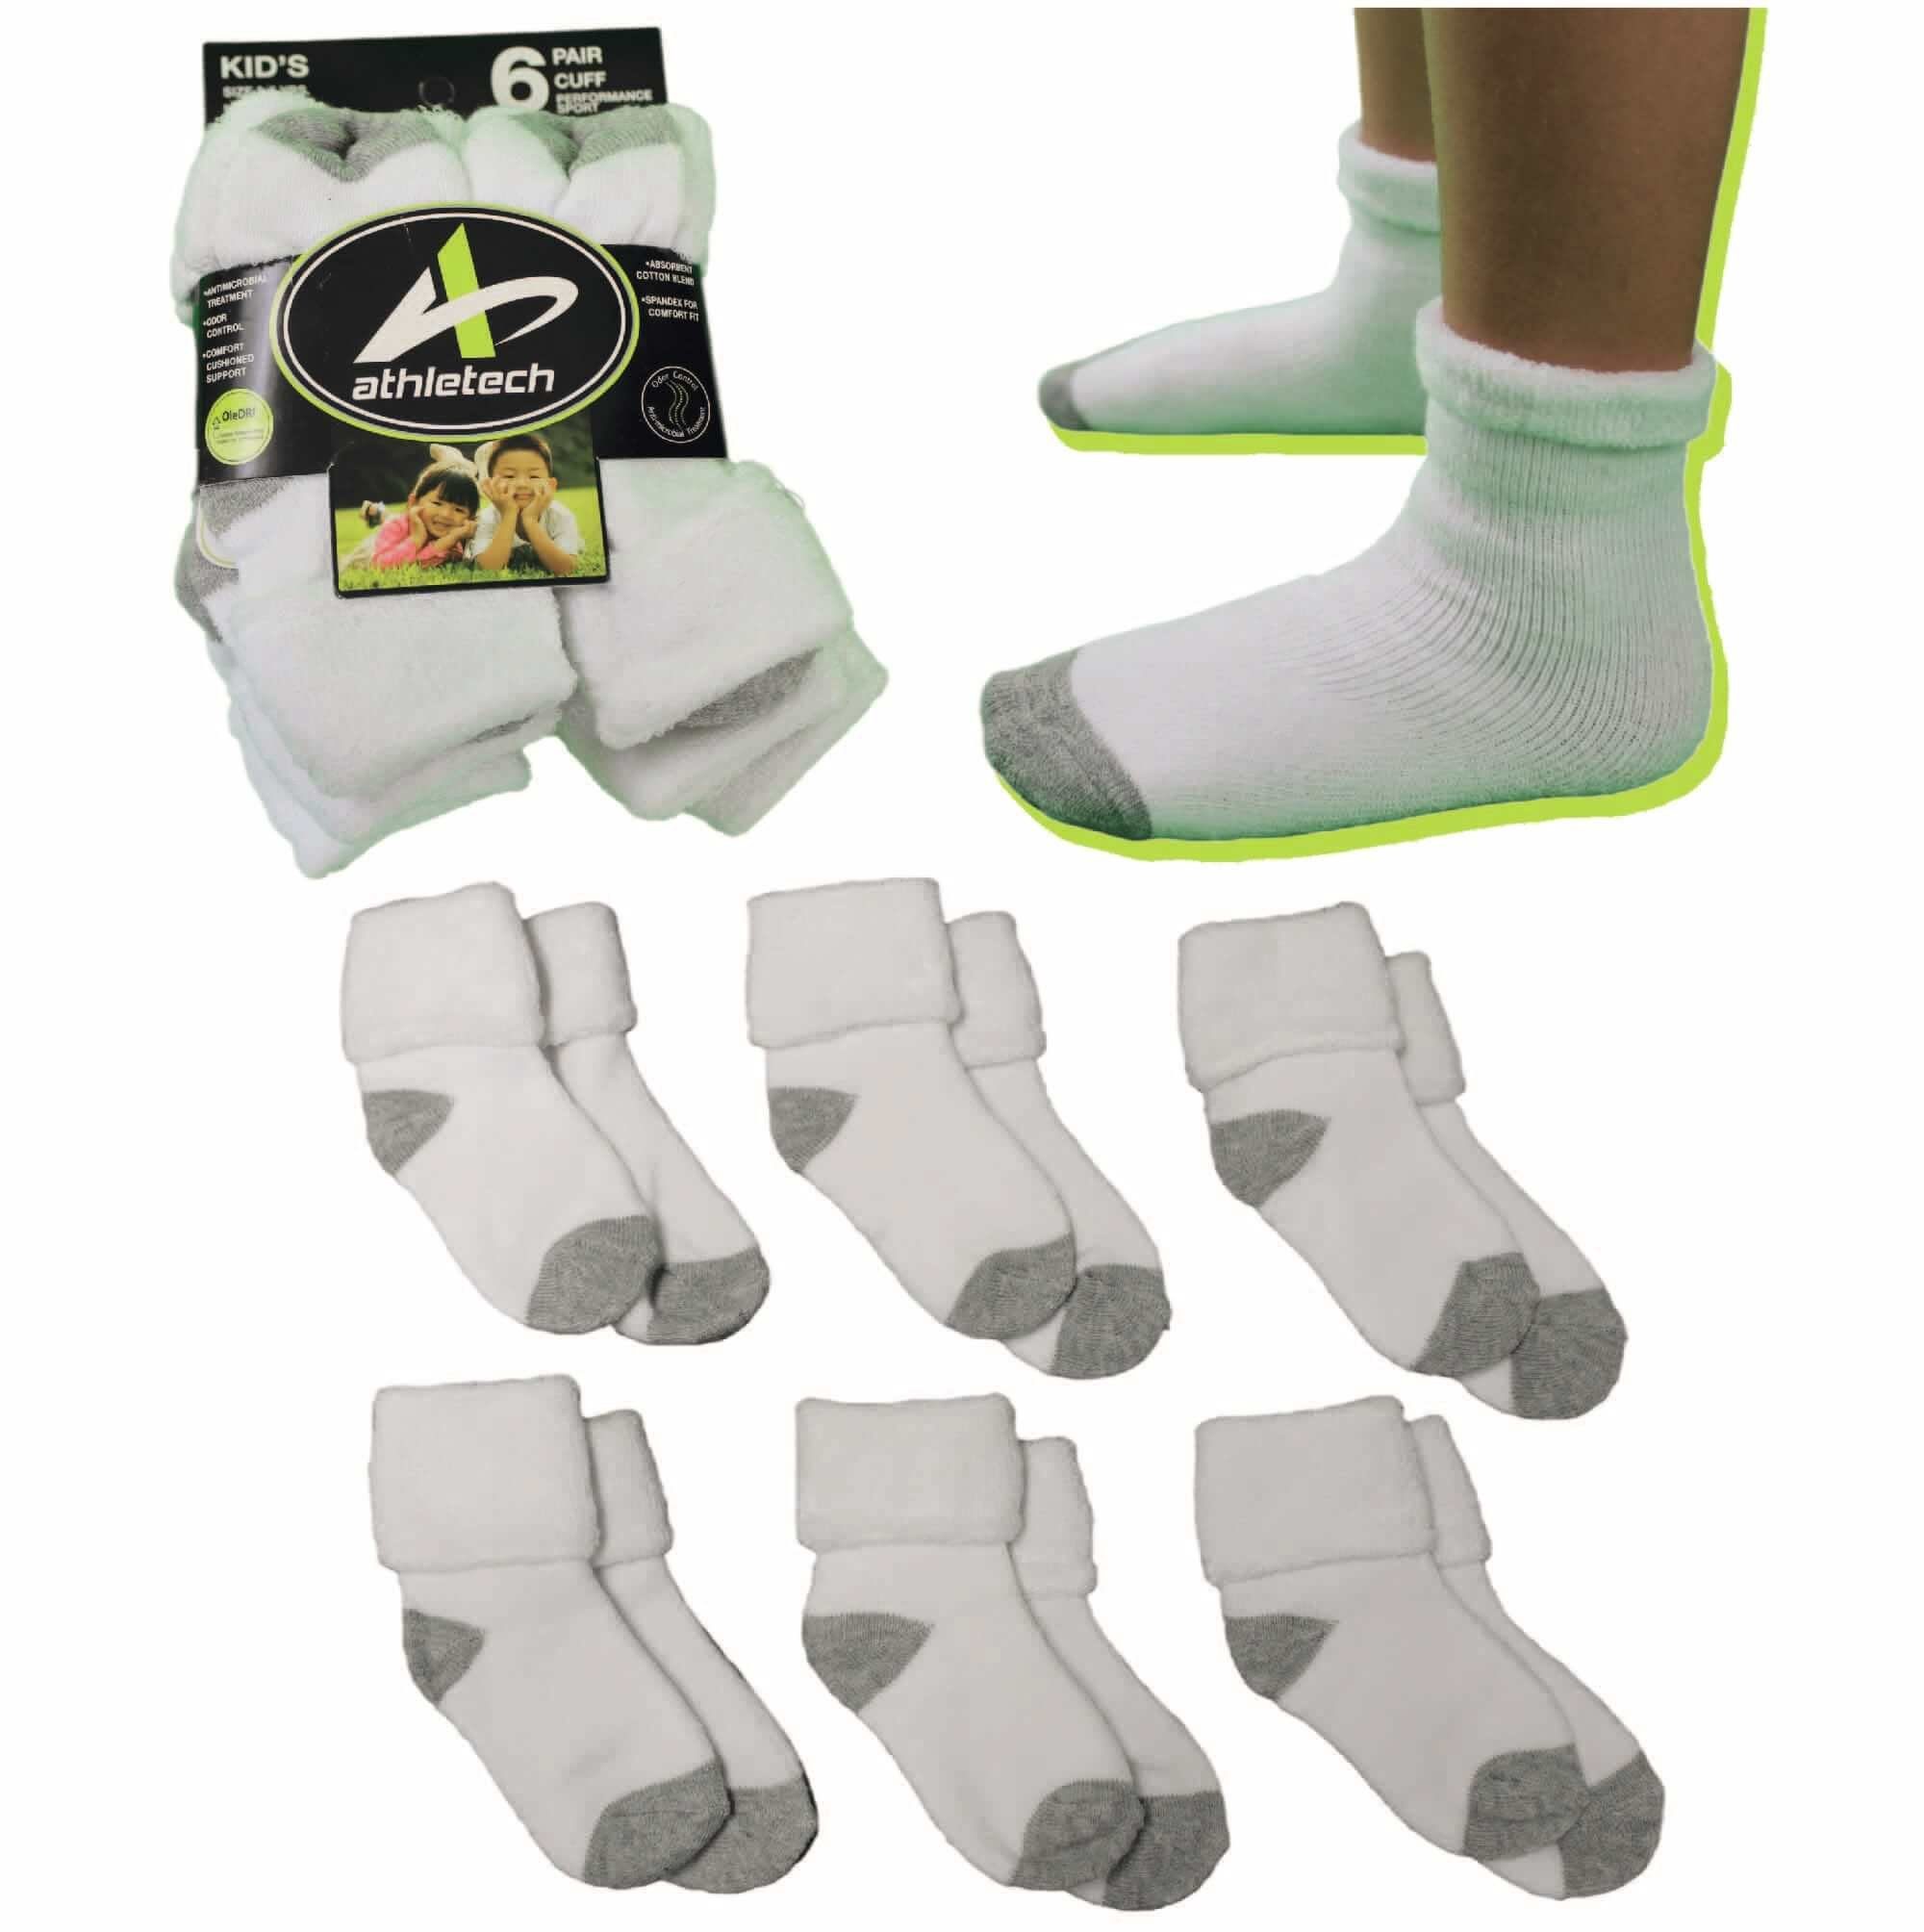 Athletech Thermosocken 6 Paar Thermo Socken für Kinder 3-5 Jahre bis Gr.34